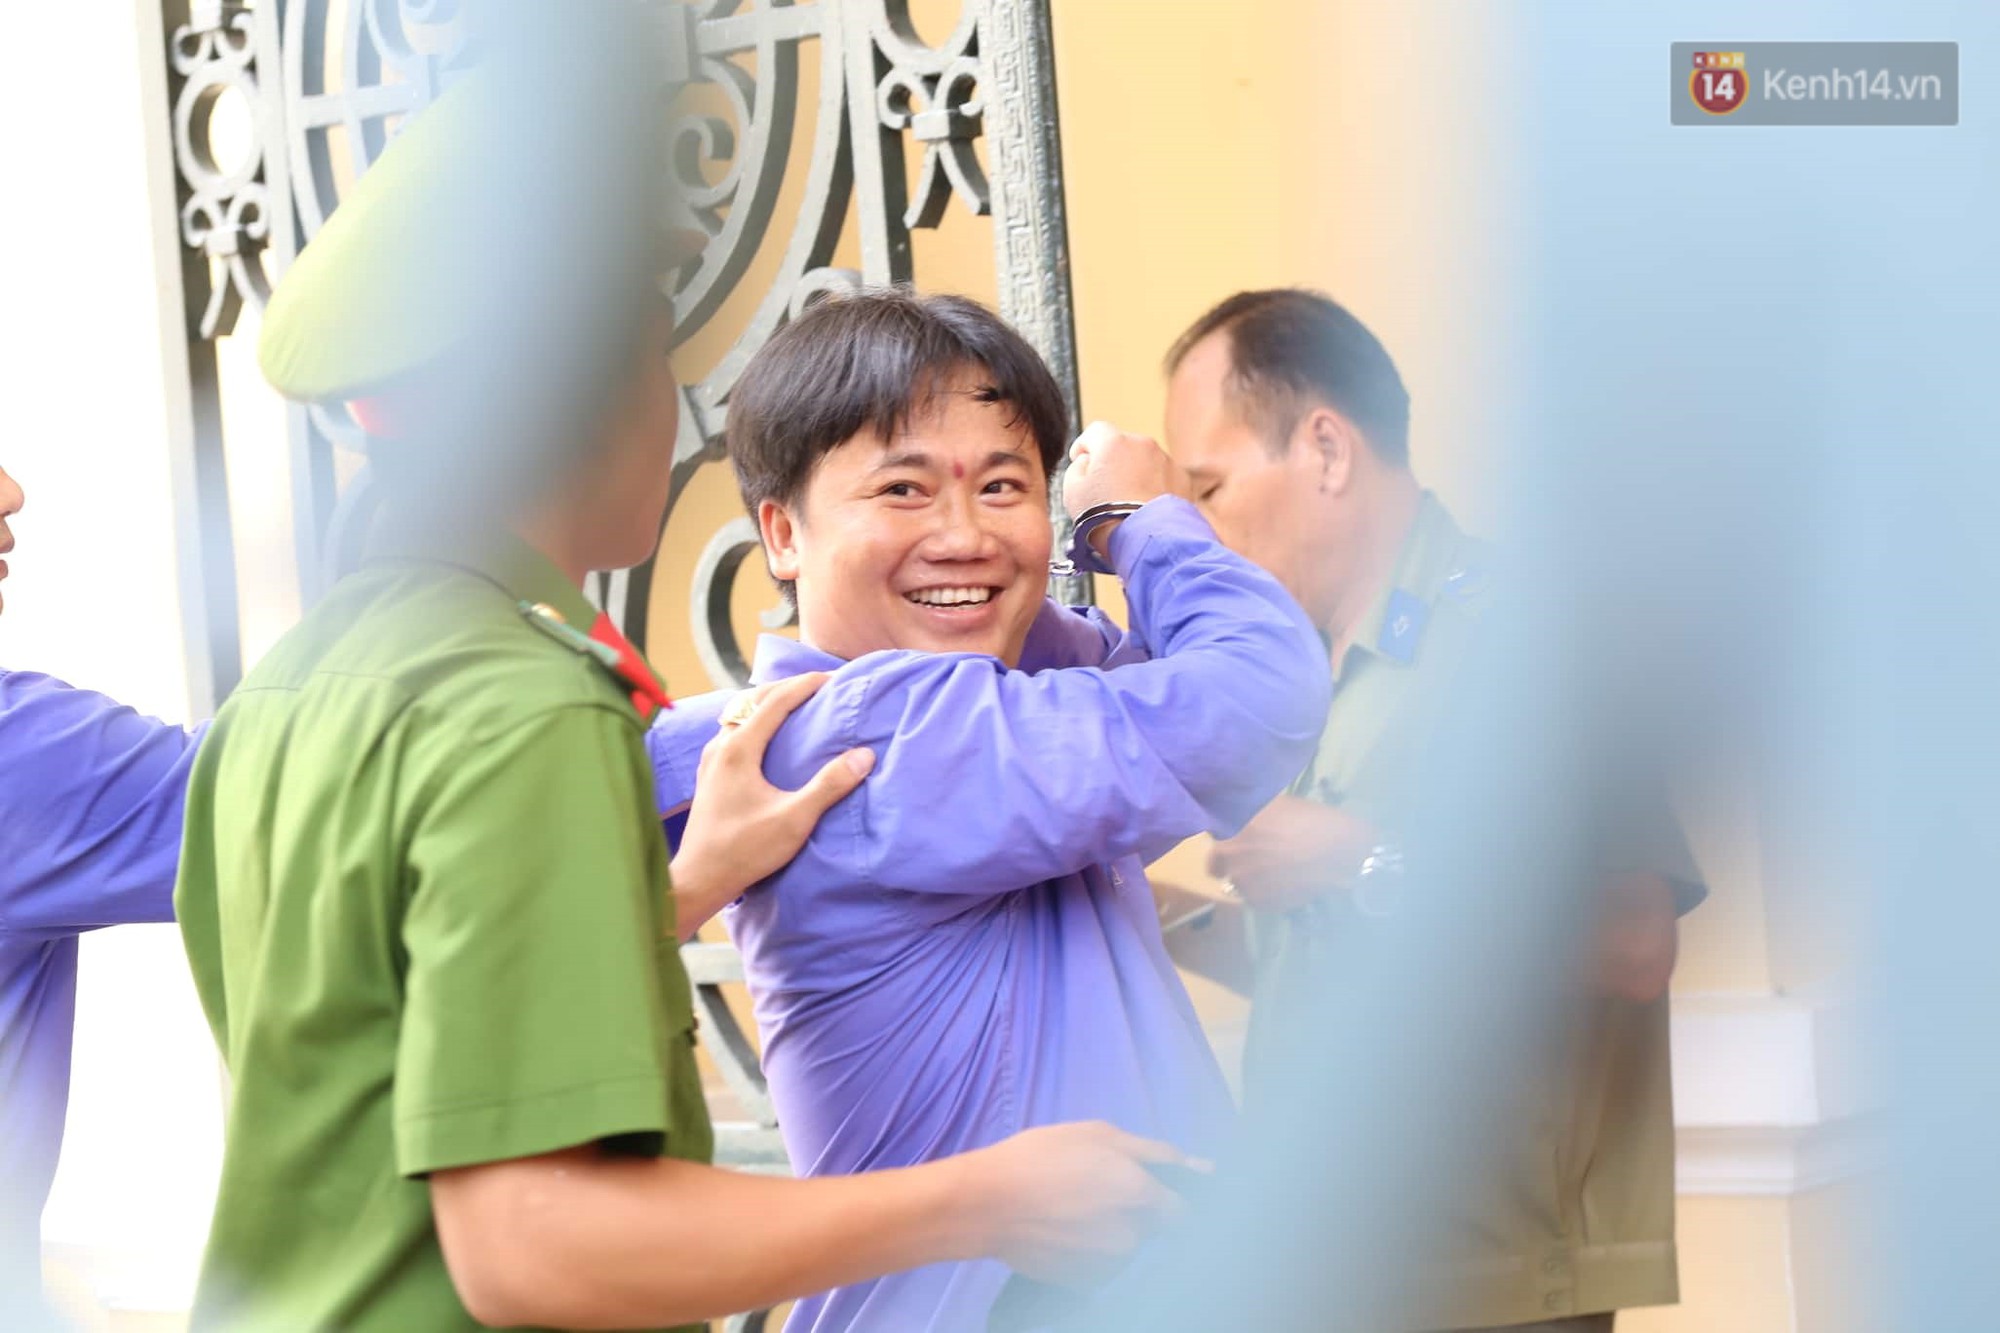 Vợ cũ lĩnh án 18 tháng tù, bác sĩ Chiêm Quốc Thái tuyên bố sẽ kháng cáo - Ảnh 4.